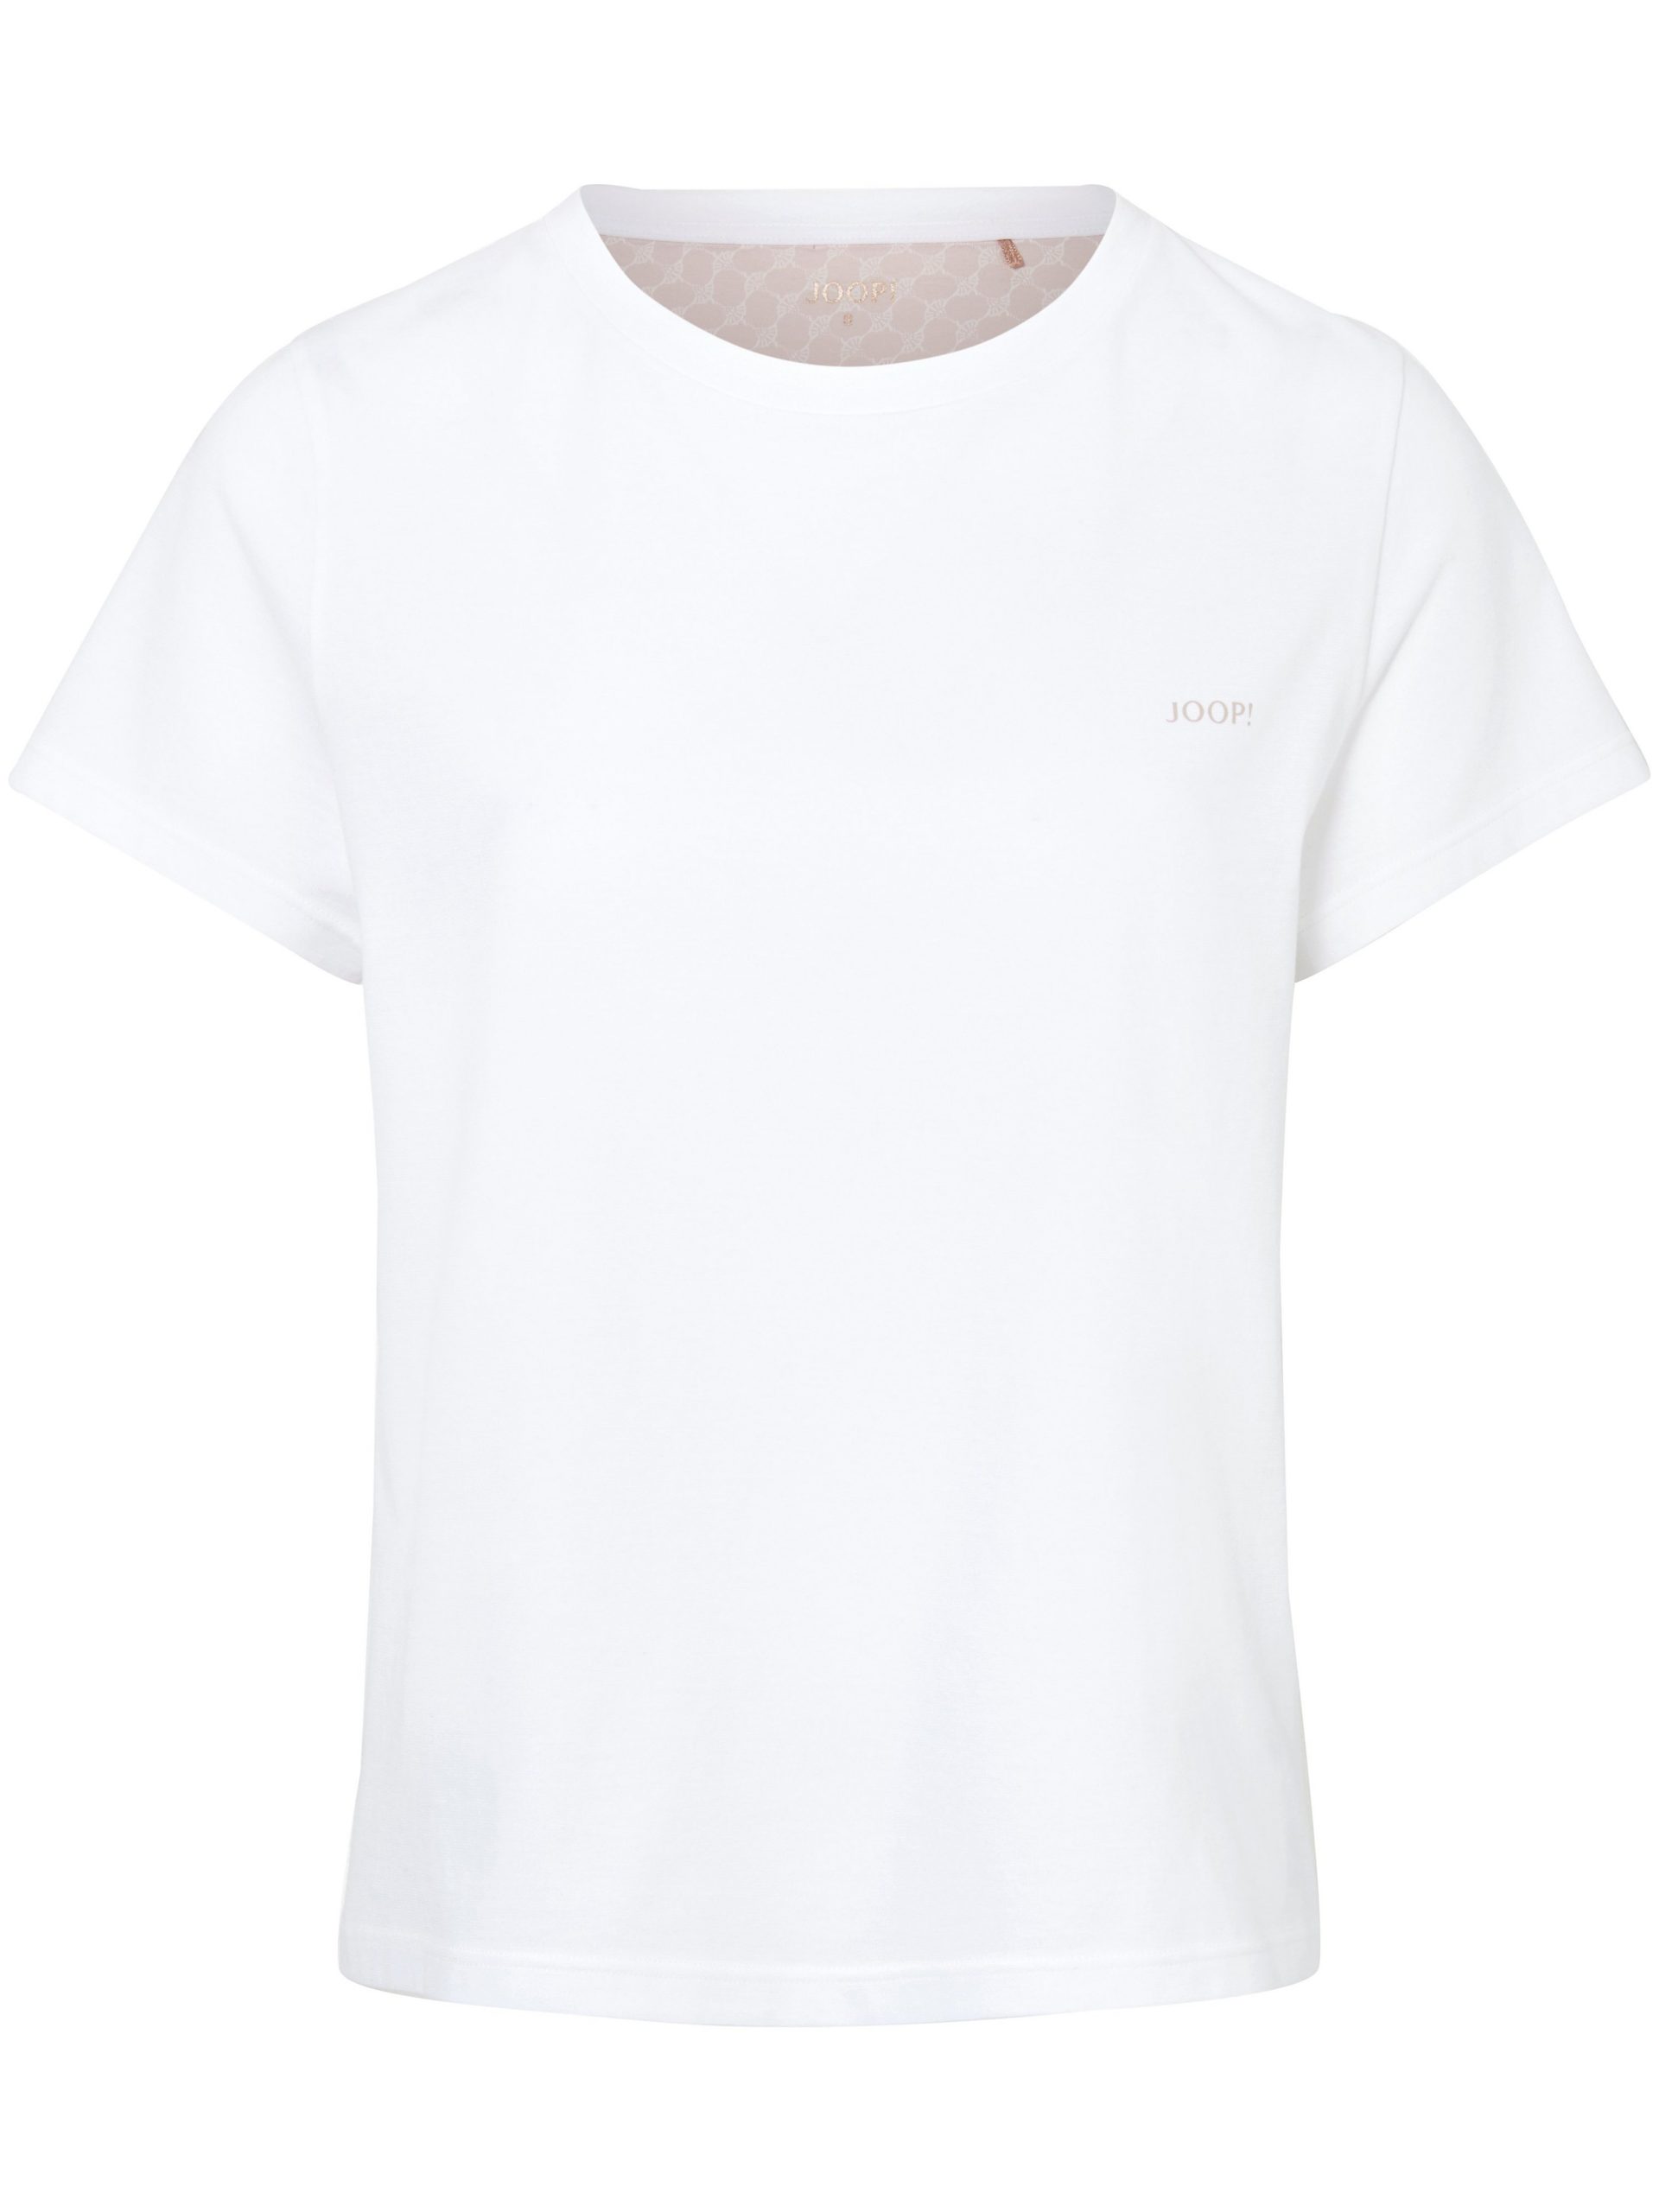 Shirt van 100% katoen Van Joop! wit Kopen